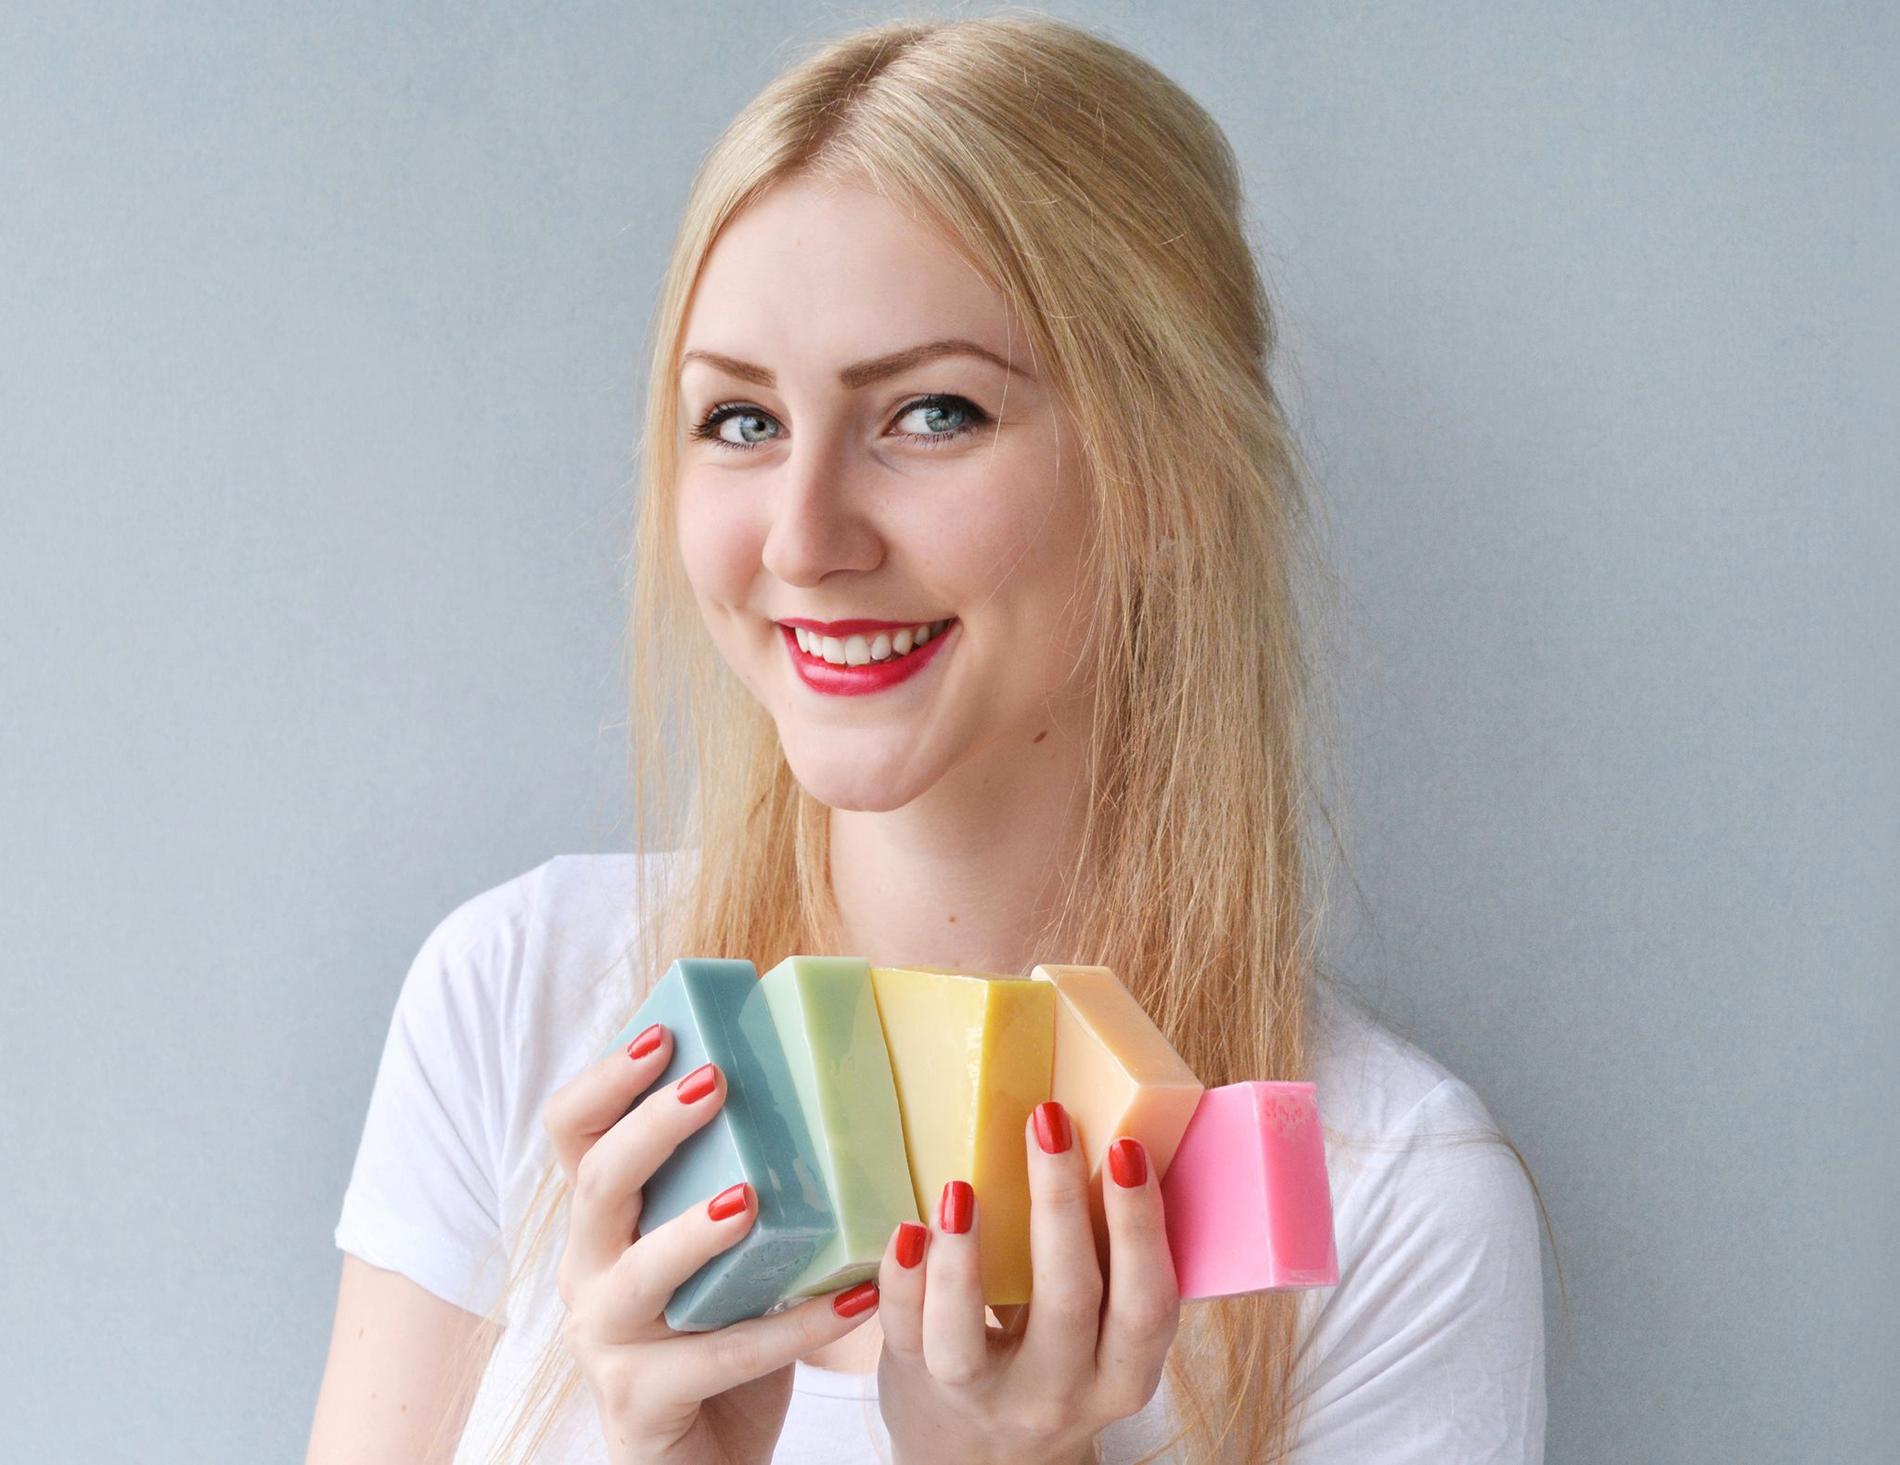 SÅPEKOKK: Farger og lukter, visping og miksing. Såpelaging har mye til felles med matlaging, forteller såpegründer Marte Ravn Tovik.